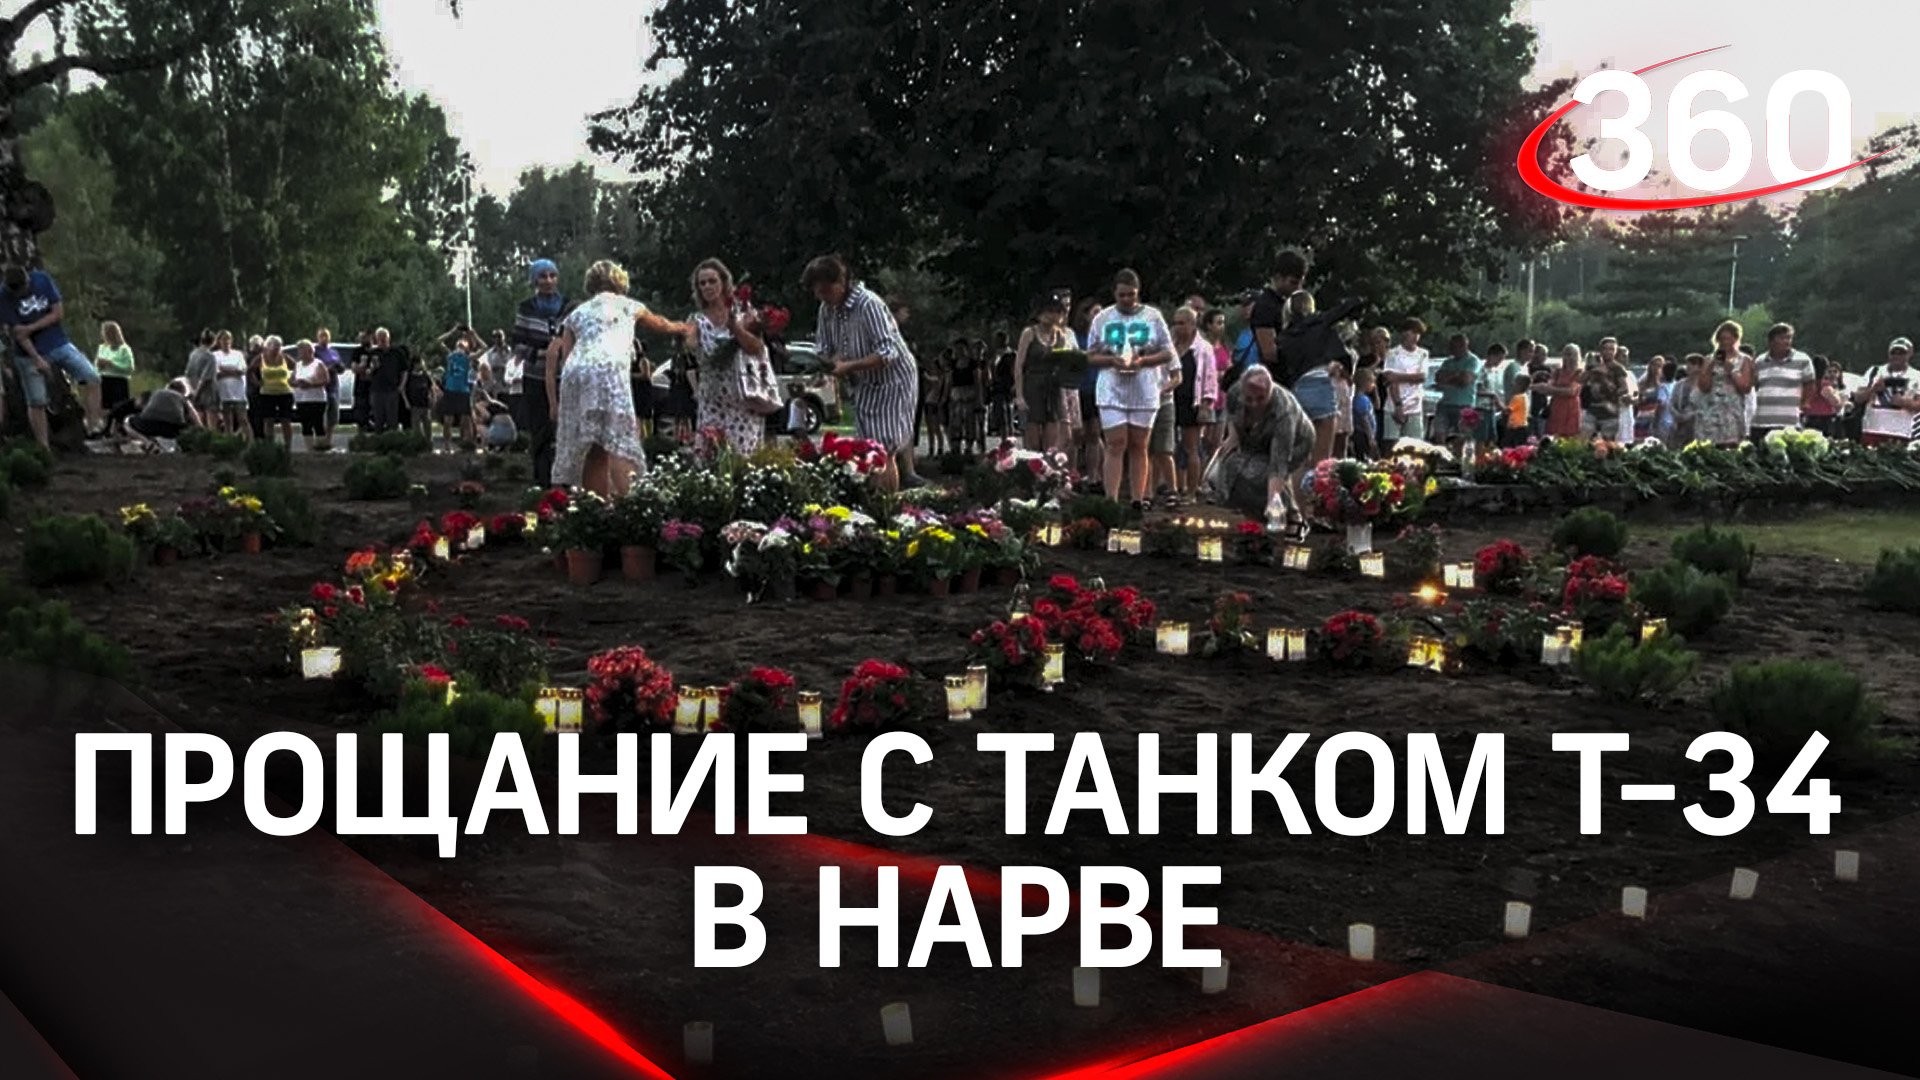 Сотни жителей Нарвы пришли к месту, где стоял Т-34